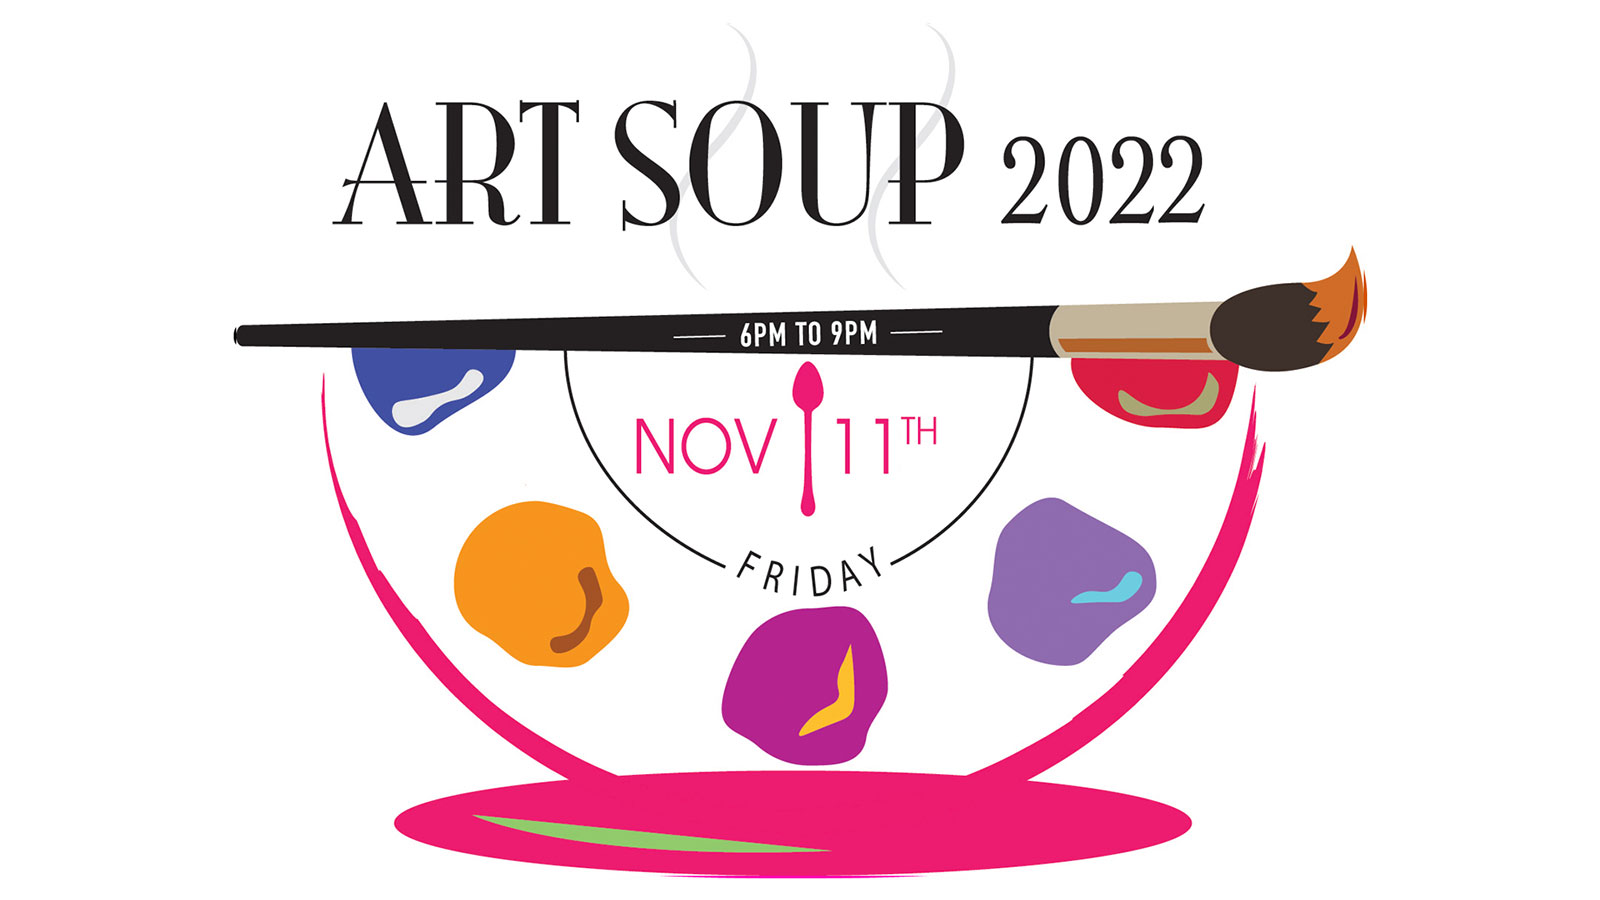 Art Soup Fundraiser Set For November 11